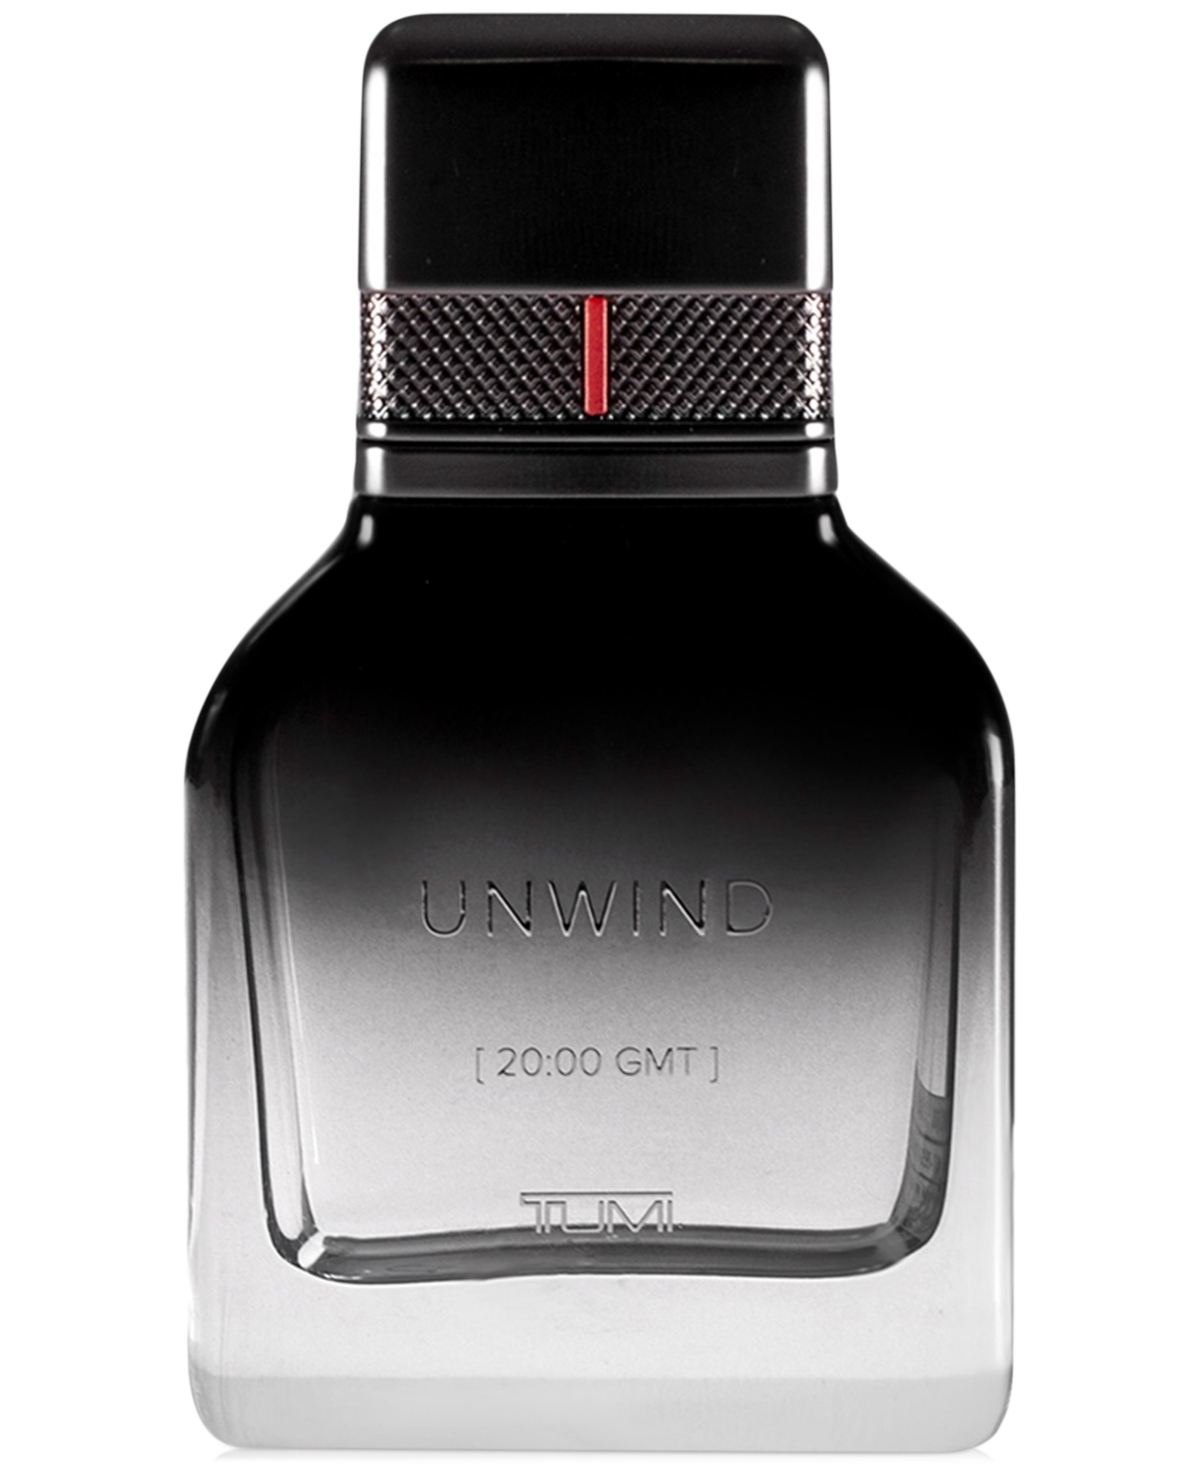 Men's Unwind [20:00 Gmt] Eau de Parfum Spray, 1 oz.